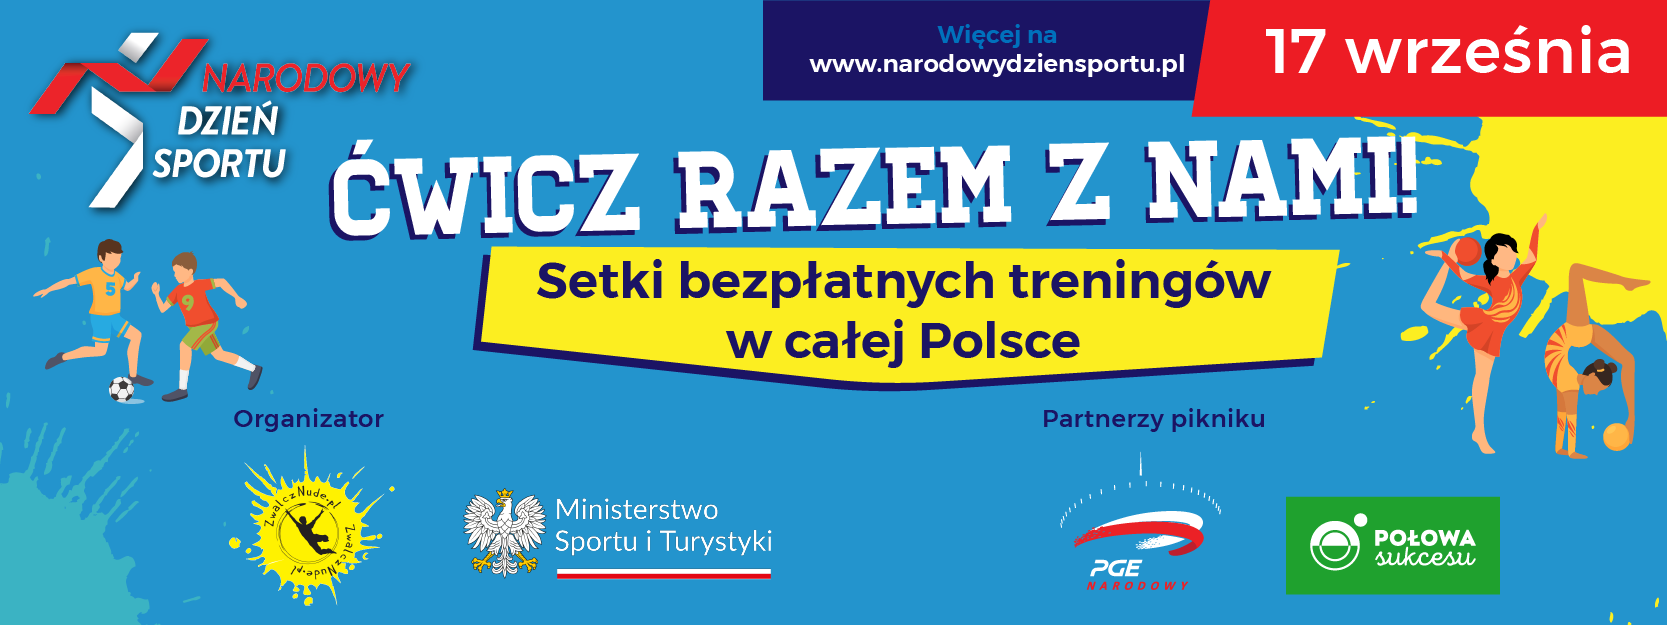 17 września - Ćwicz Razem z Nami - więcej na www.narodowydziensportu.pl